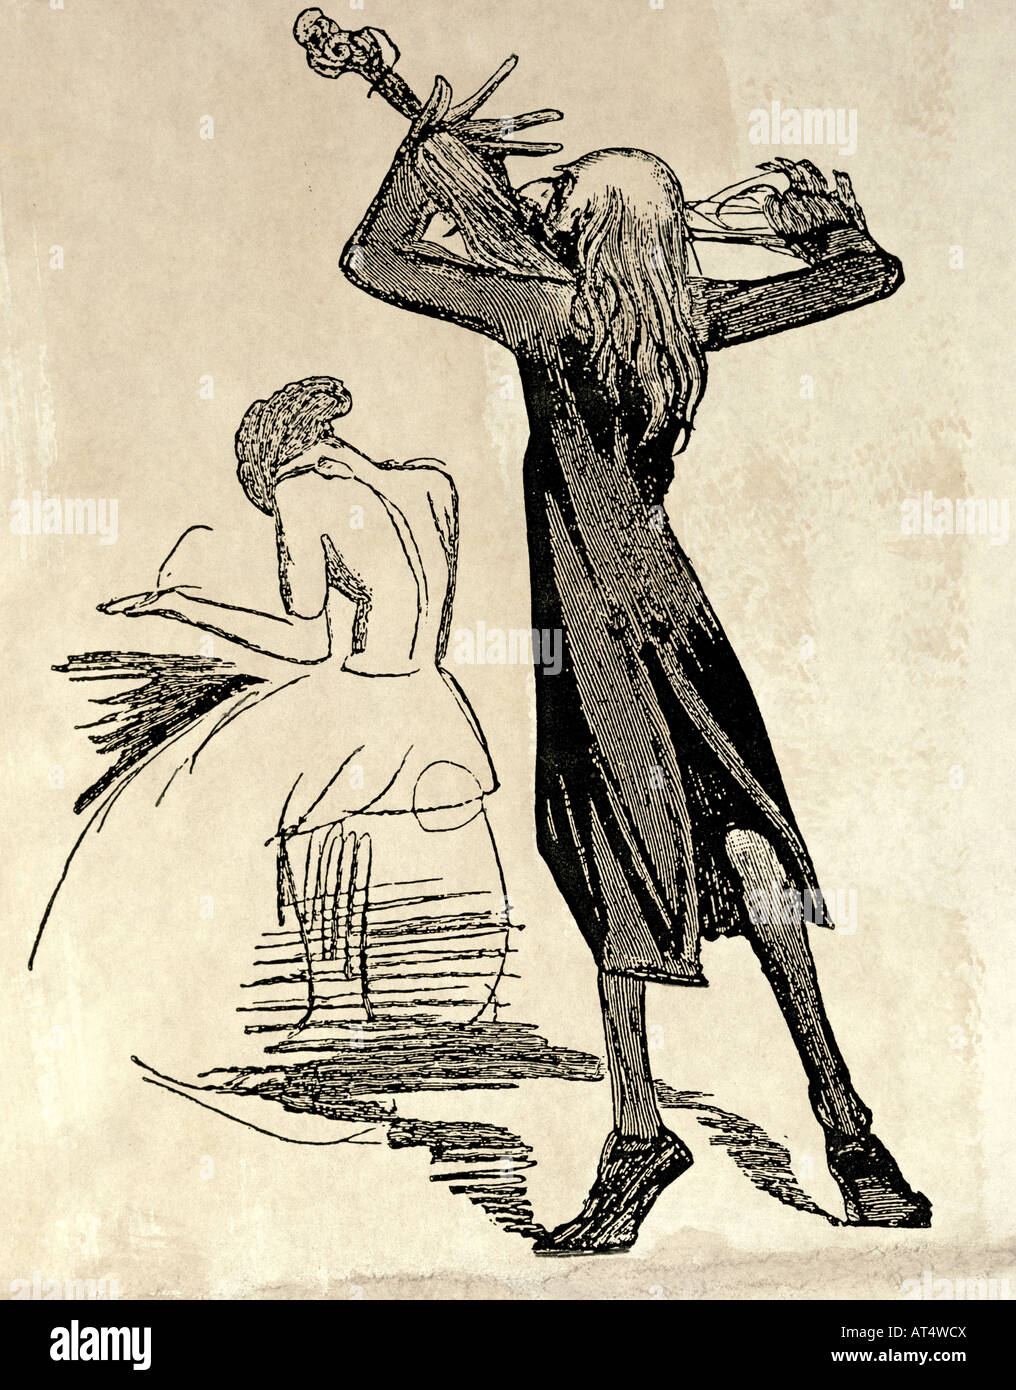 Belle arti, Dore, Gustave (1832 - 1883), grafica caricatura su virtuosi esecutori, incisione su legno, basato su Dore, circa 1860, collezione privata, artista del diritto d'autore non deve essere cancellata Foto Stock